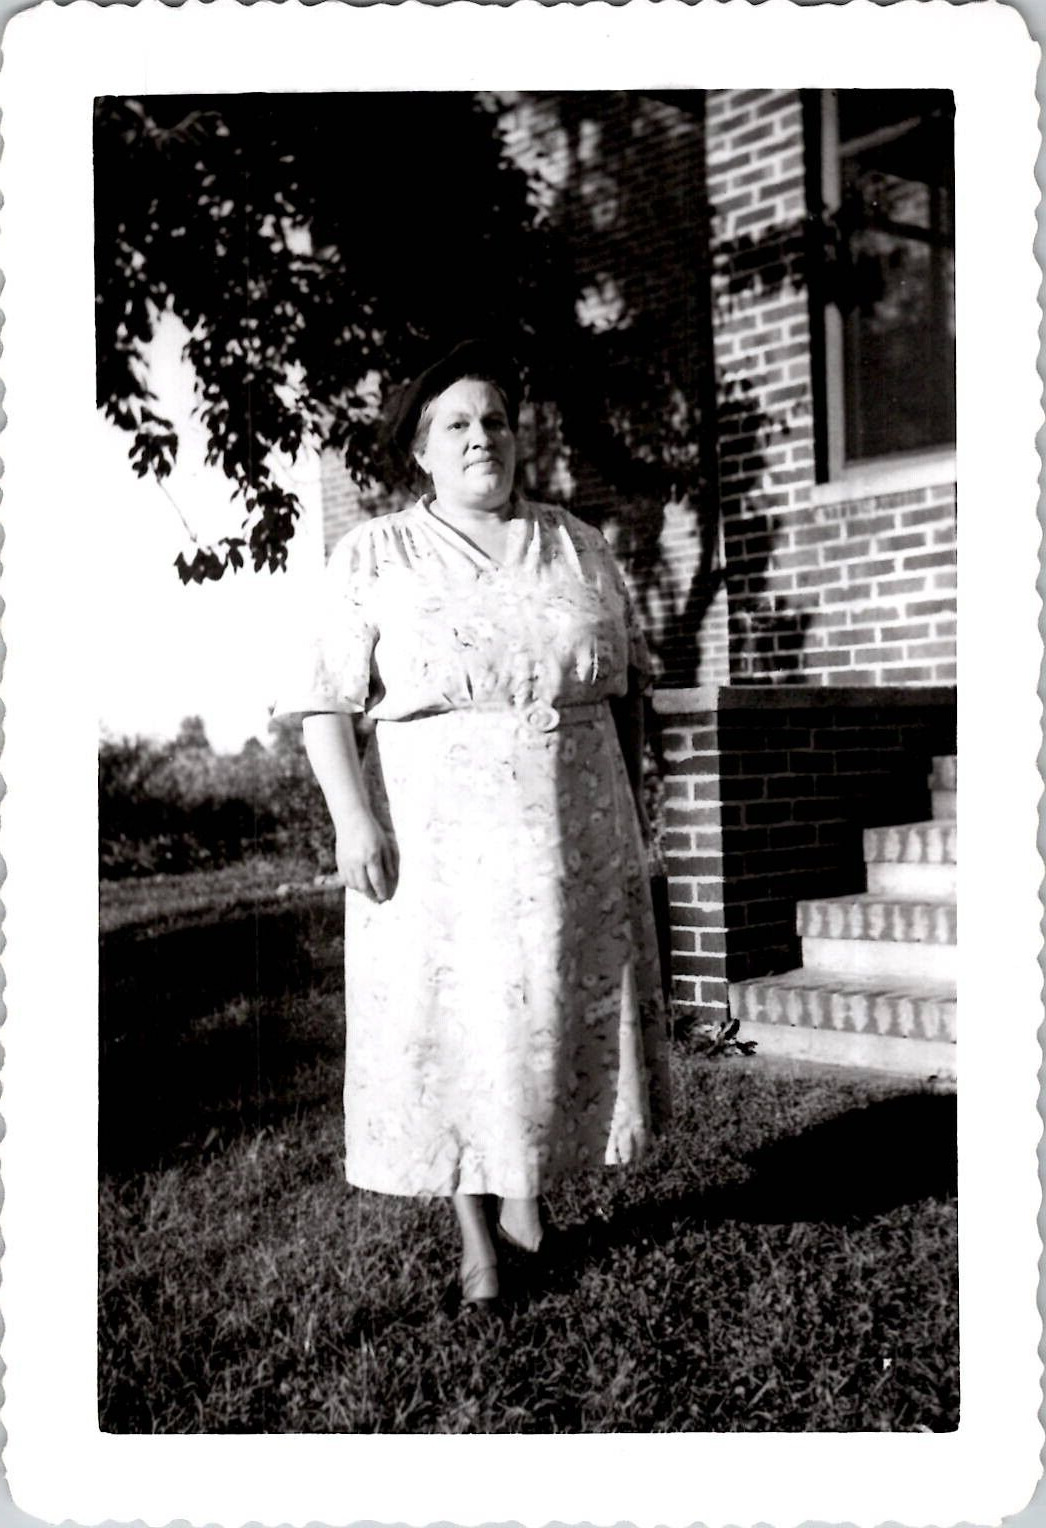 Fat Obese Woman Grandma Stone Cold Stare Farm Americana 1950s Vintage Photo